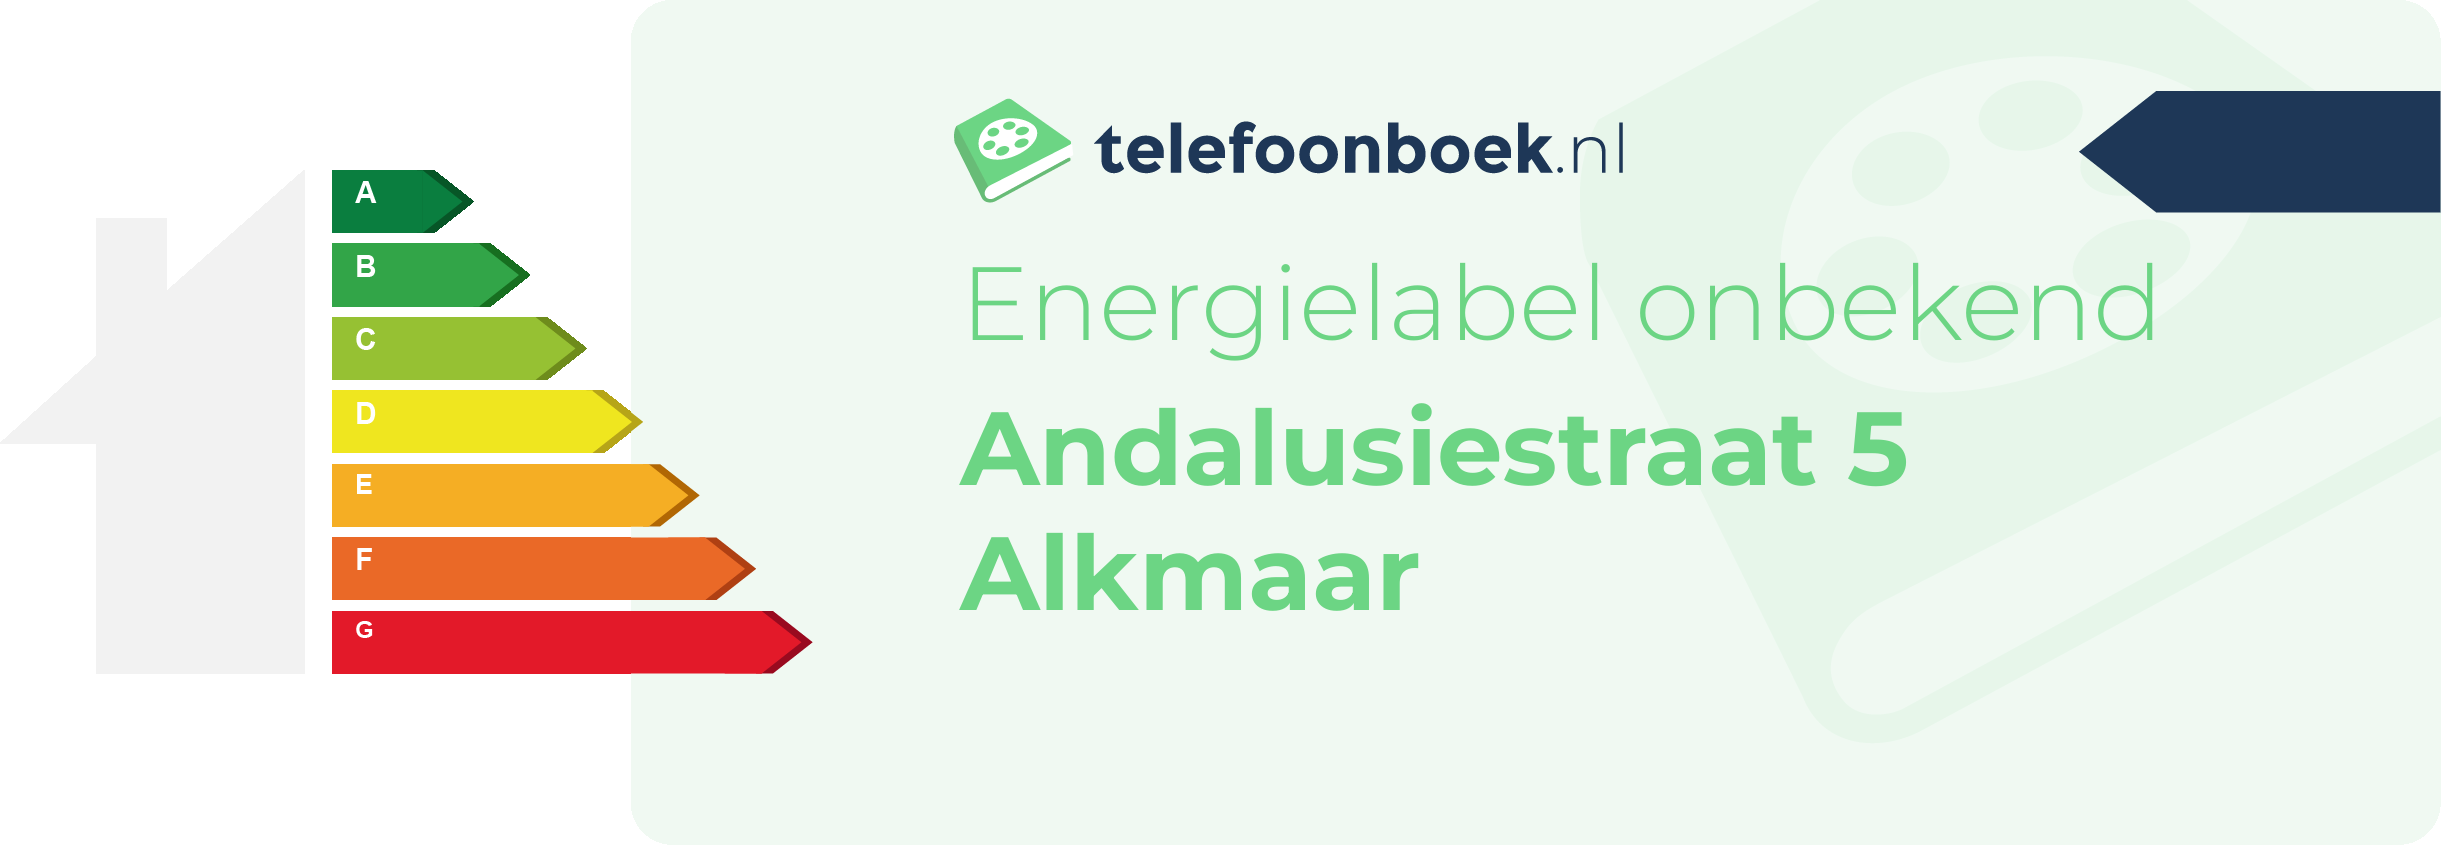 Energielabel Andalusiestraat 5 Alkmaar